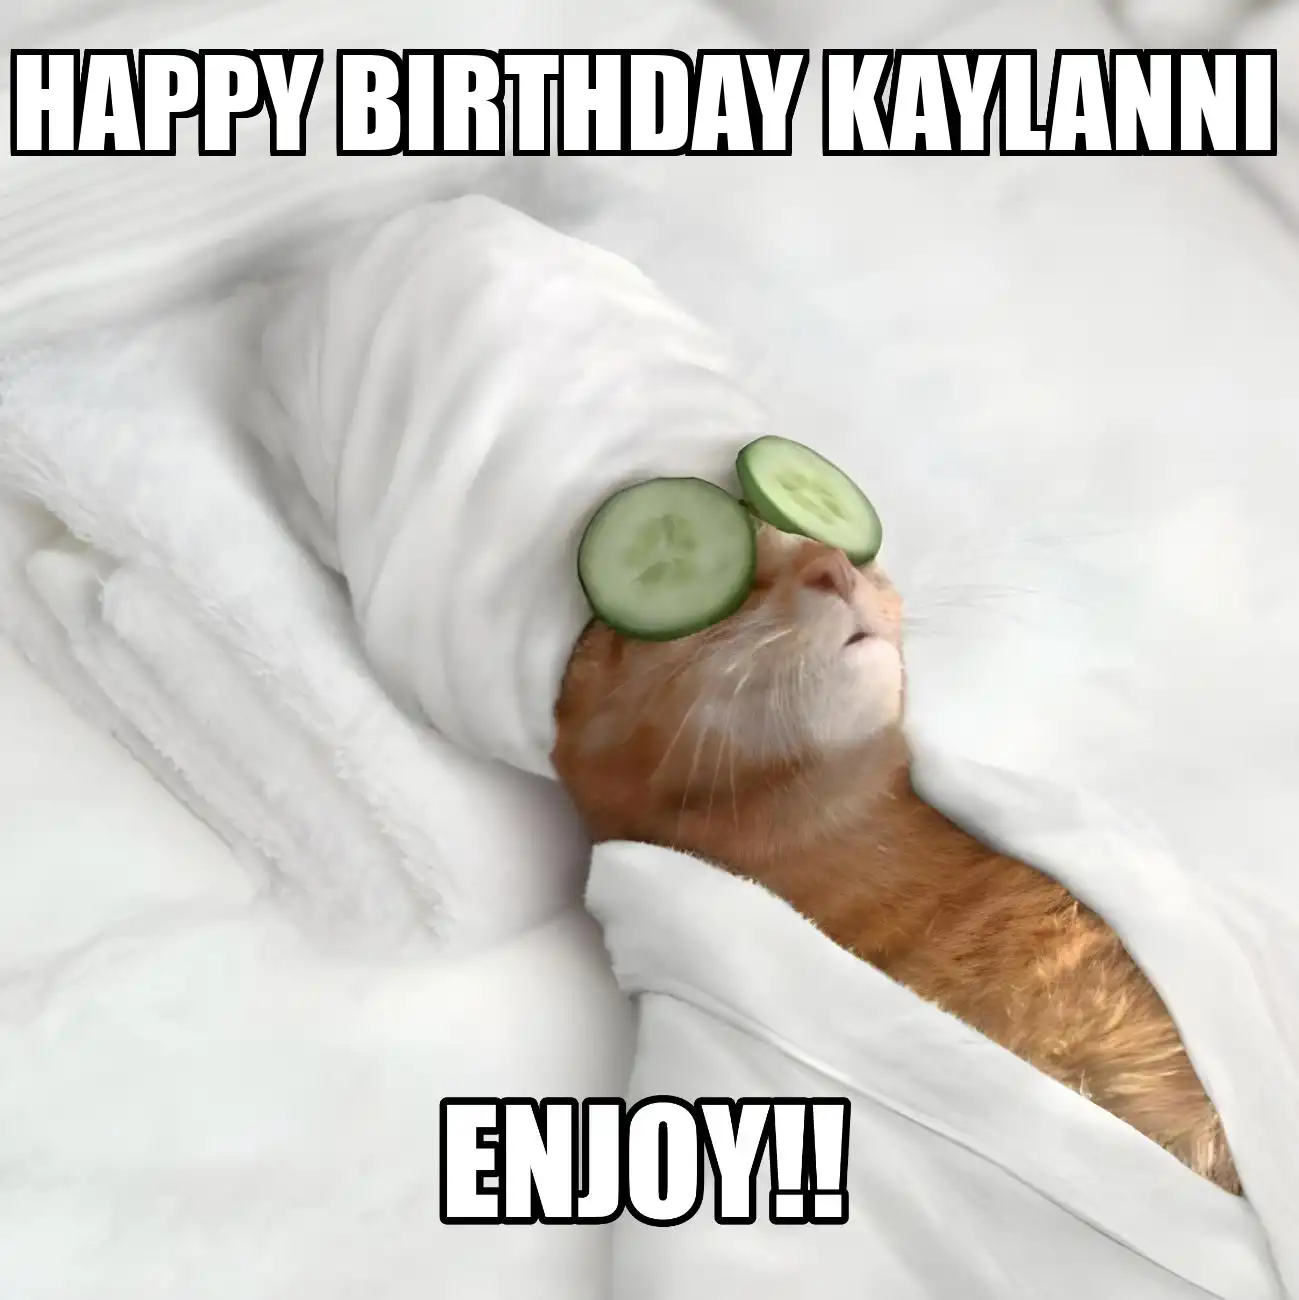 Happy Birthday Kaylanni Enjoy Cat Meme